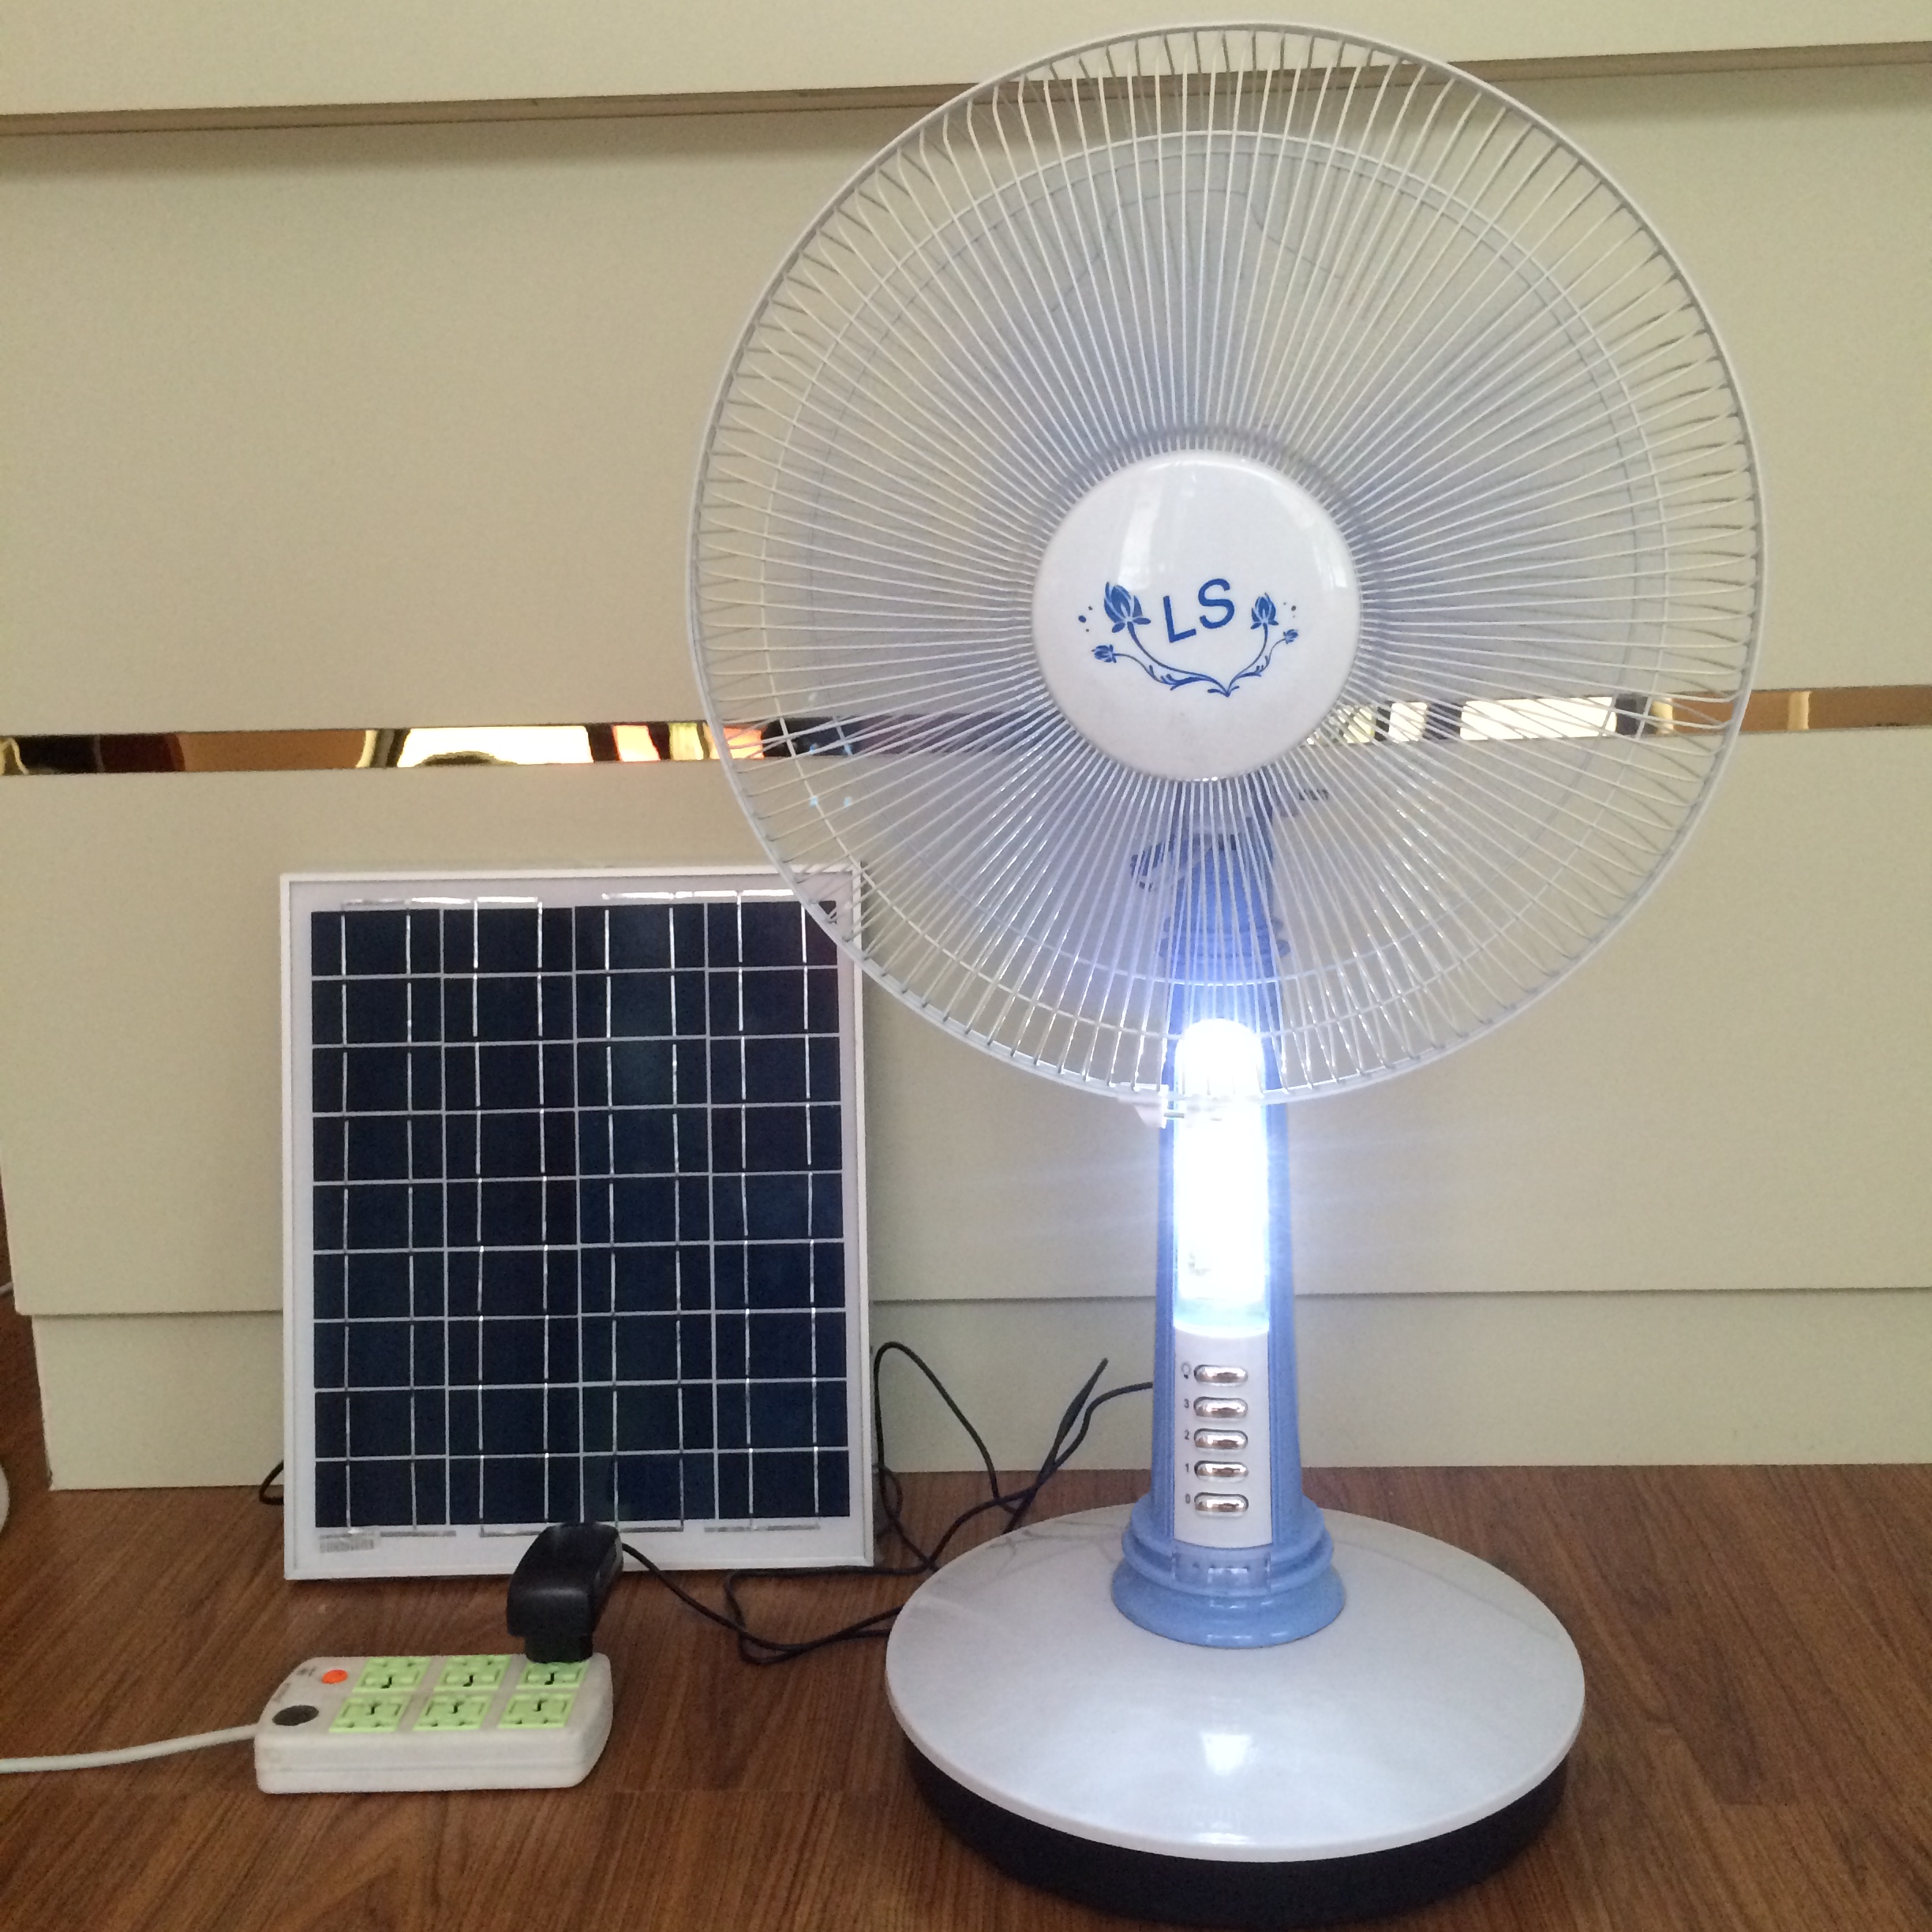 16寸太阳能灯电扇学生台式带LED灯摇头家用12V可充电风扇太阳能充电台扇图片